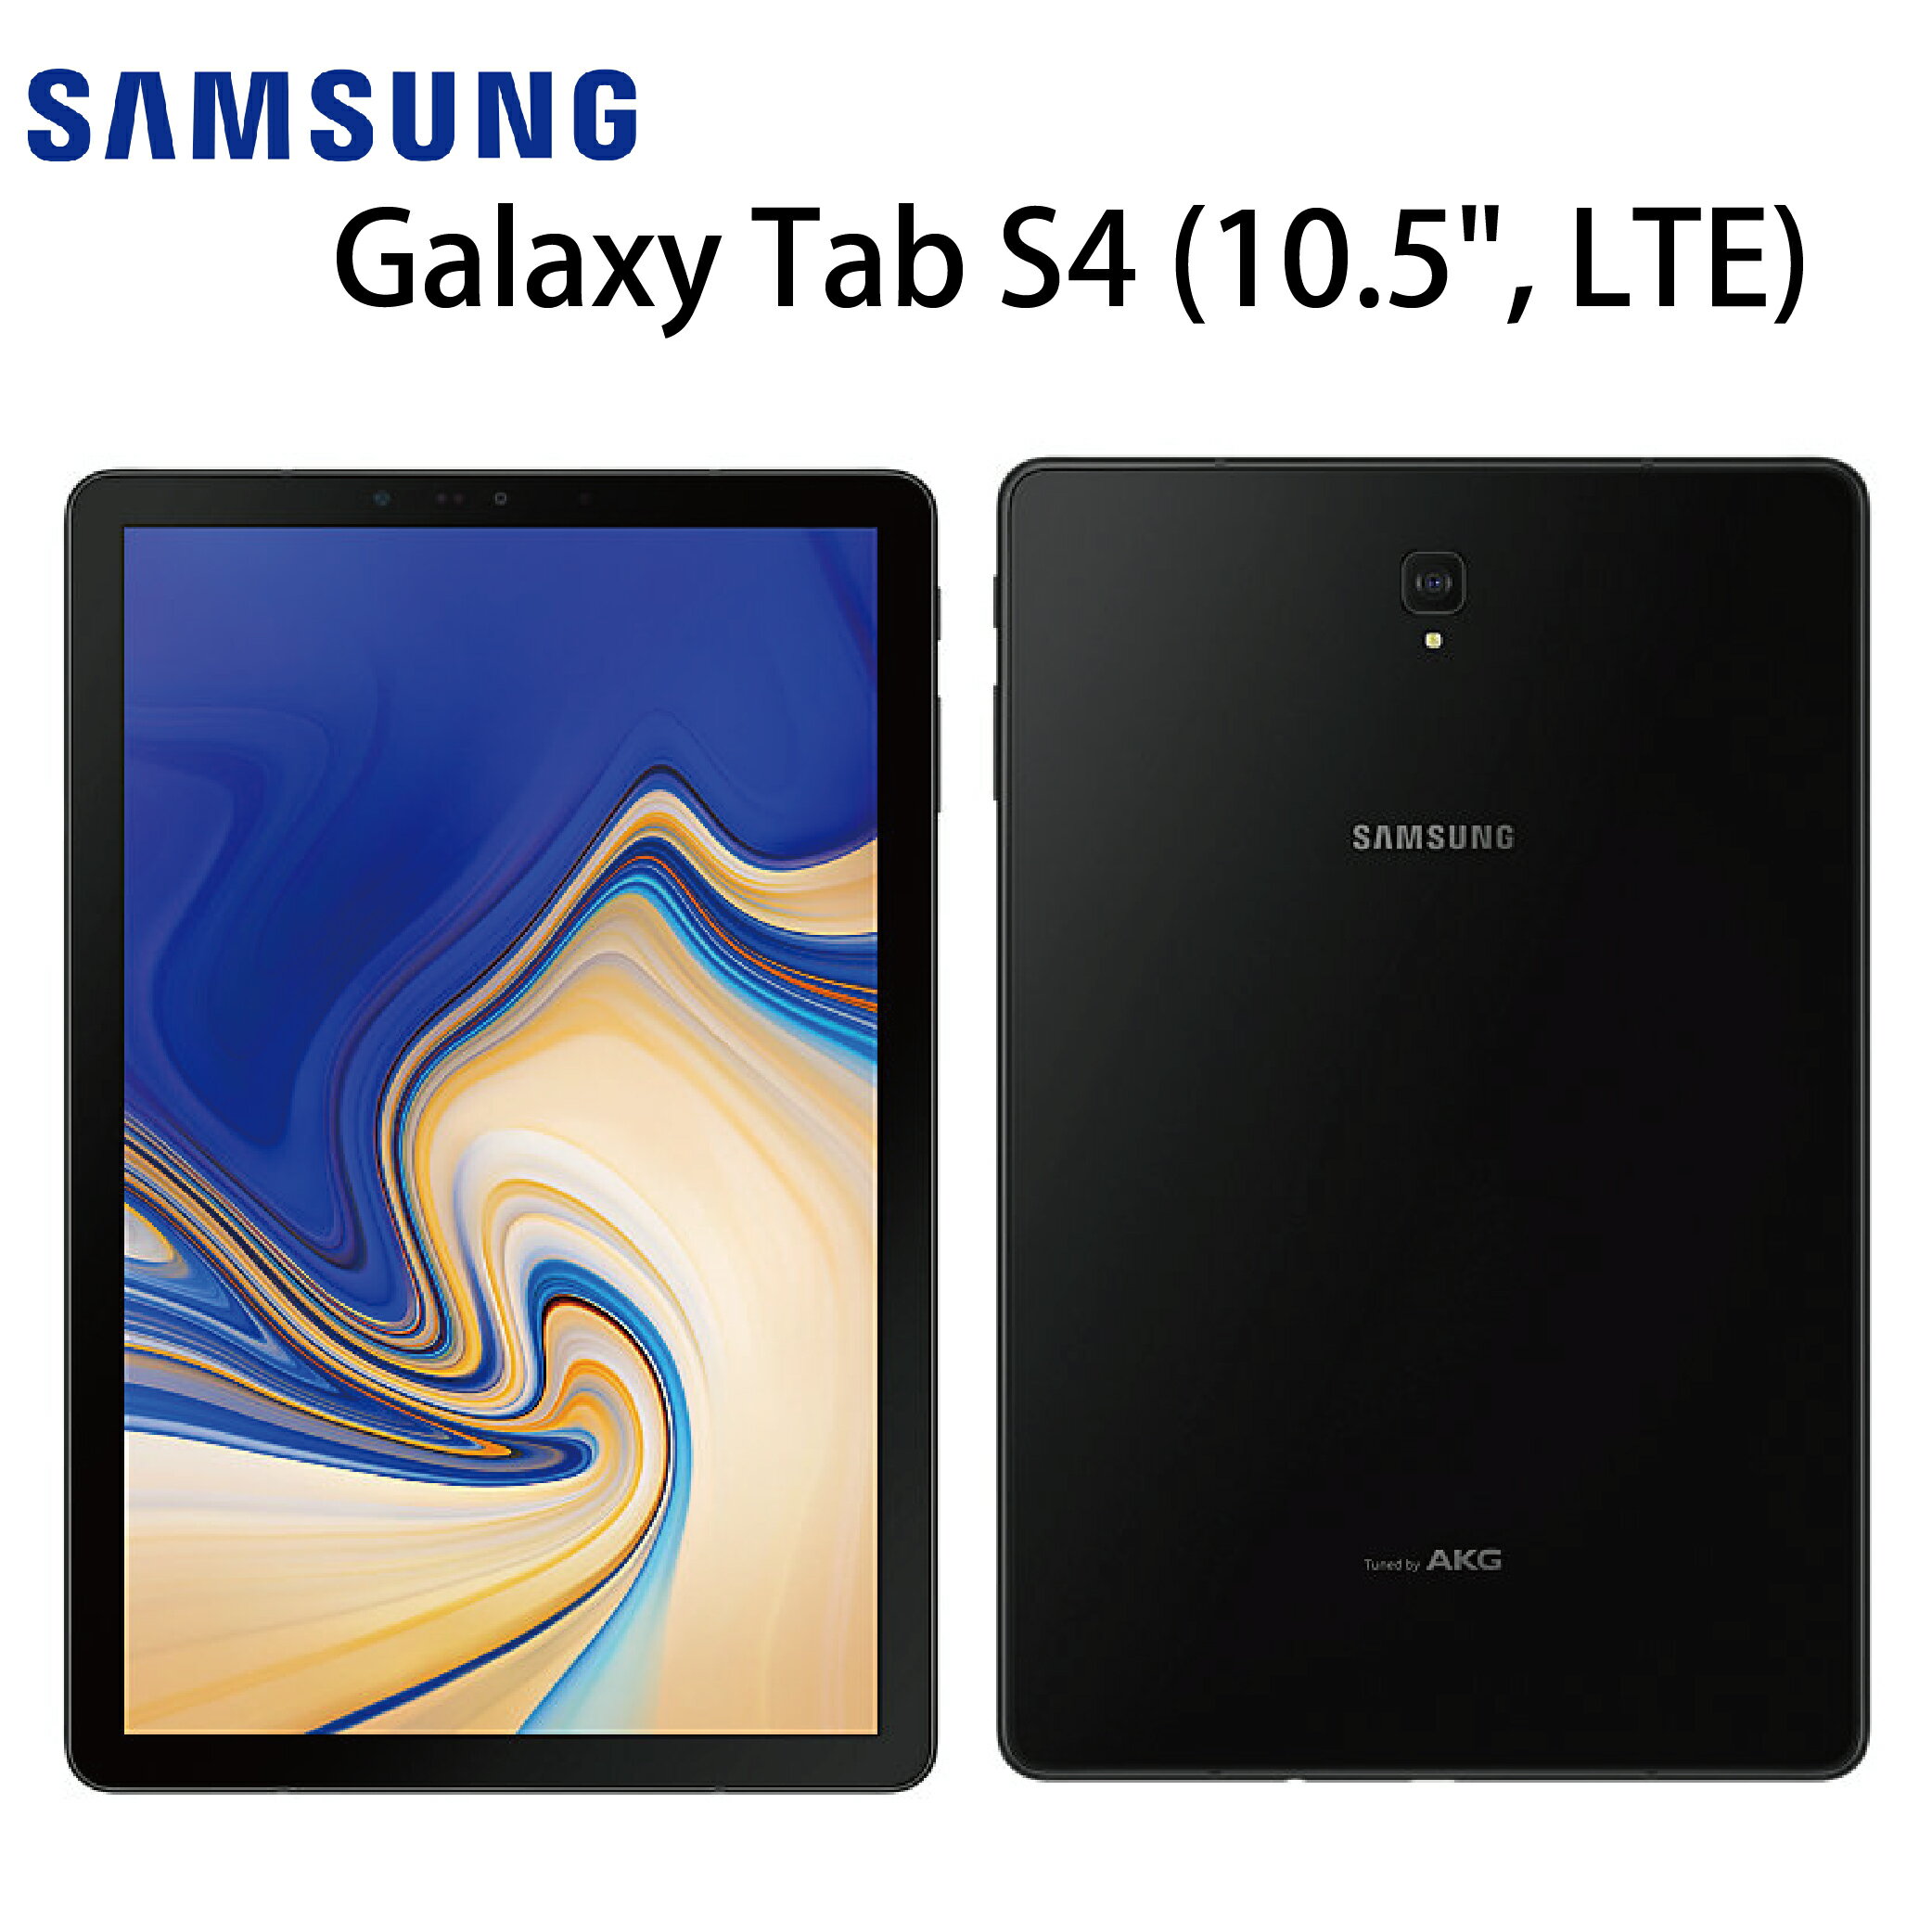 [滿3000得10%點數]三星 SAMSUNG Galaxy Tab S4 (10.5", LTE) 64G-黑《贈原廠皮套+一般亮面保貼》